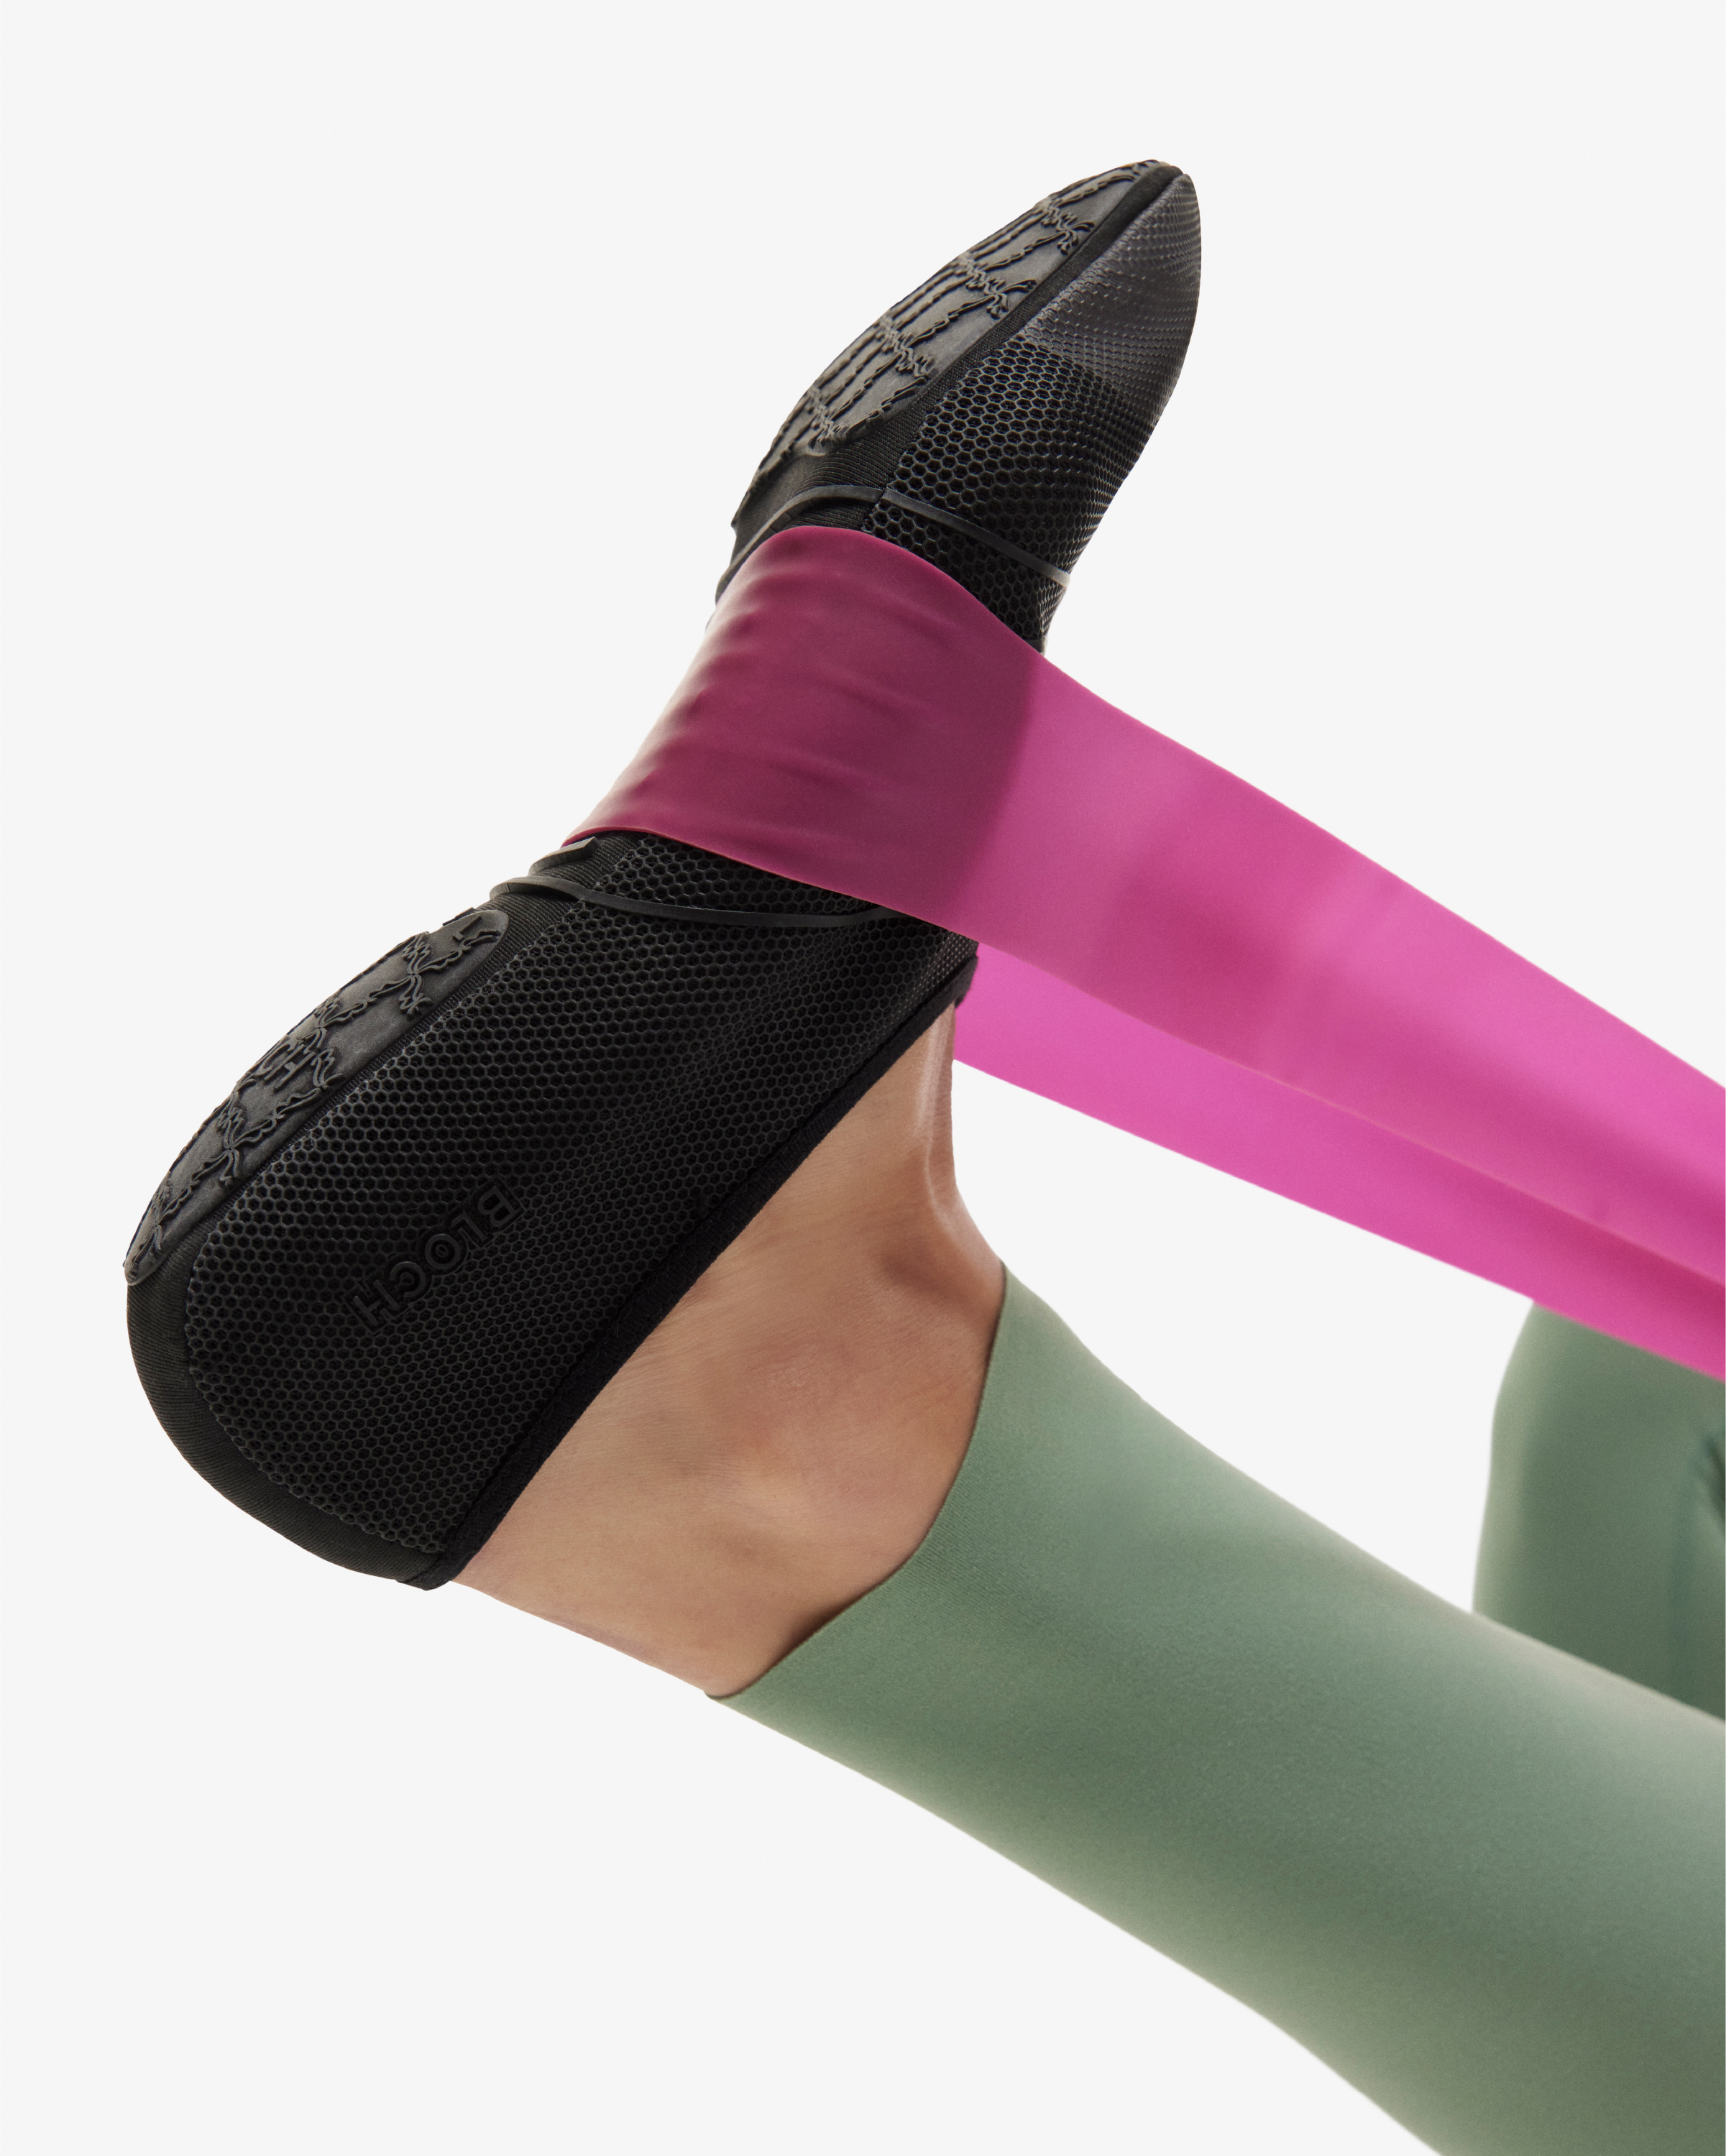 Flex Studio Shoes - Pale Pink, Yoga & Pilates Footwear